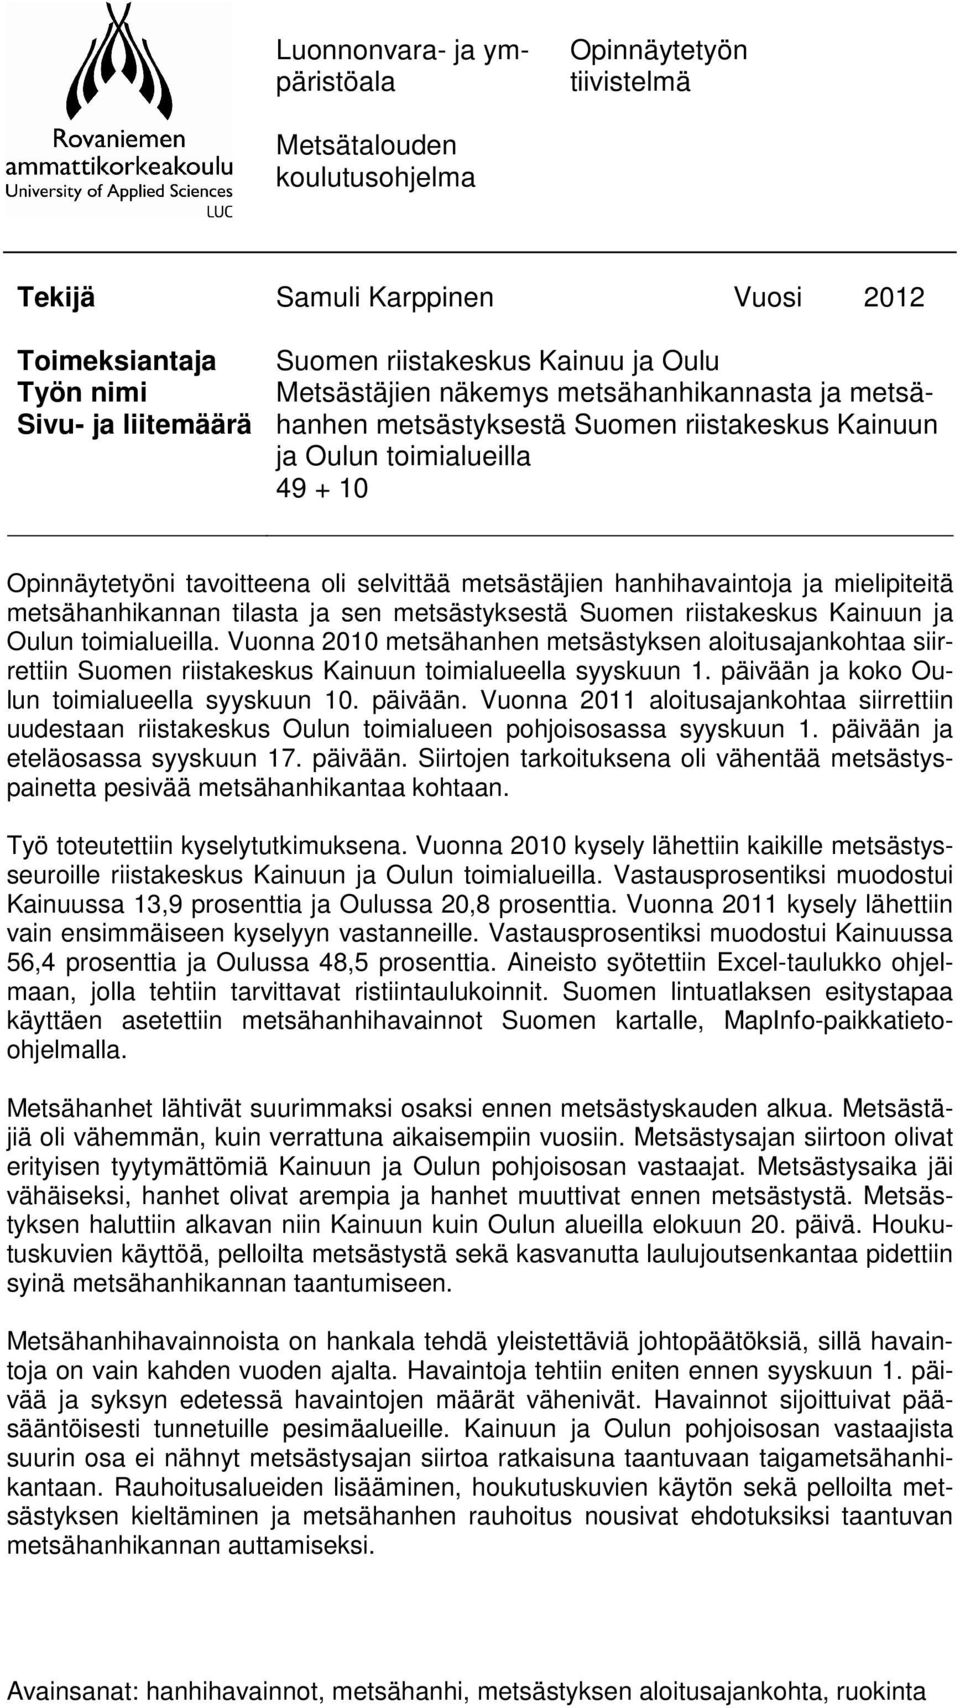 ja mielipiteitä metsähanhikannan tilasta ja sen metsästyksestä Suomen riistakeskus Kainuun ja Oulun toimialueilla.